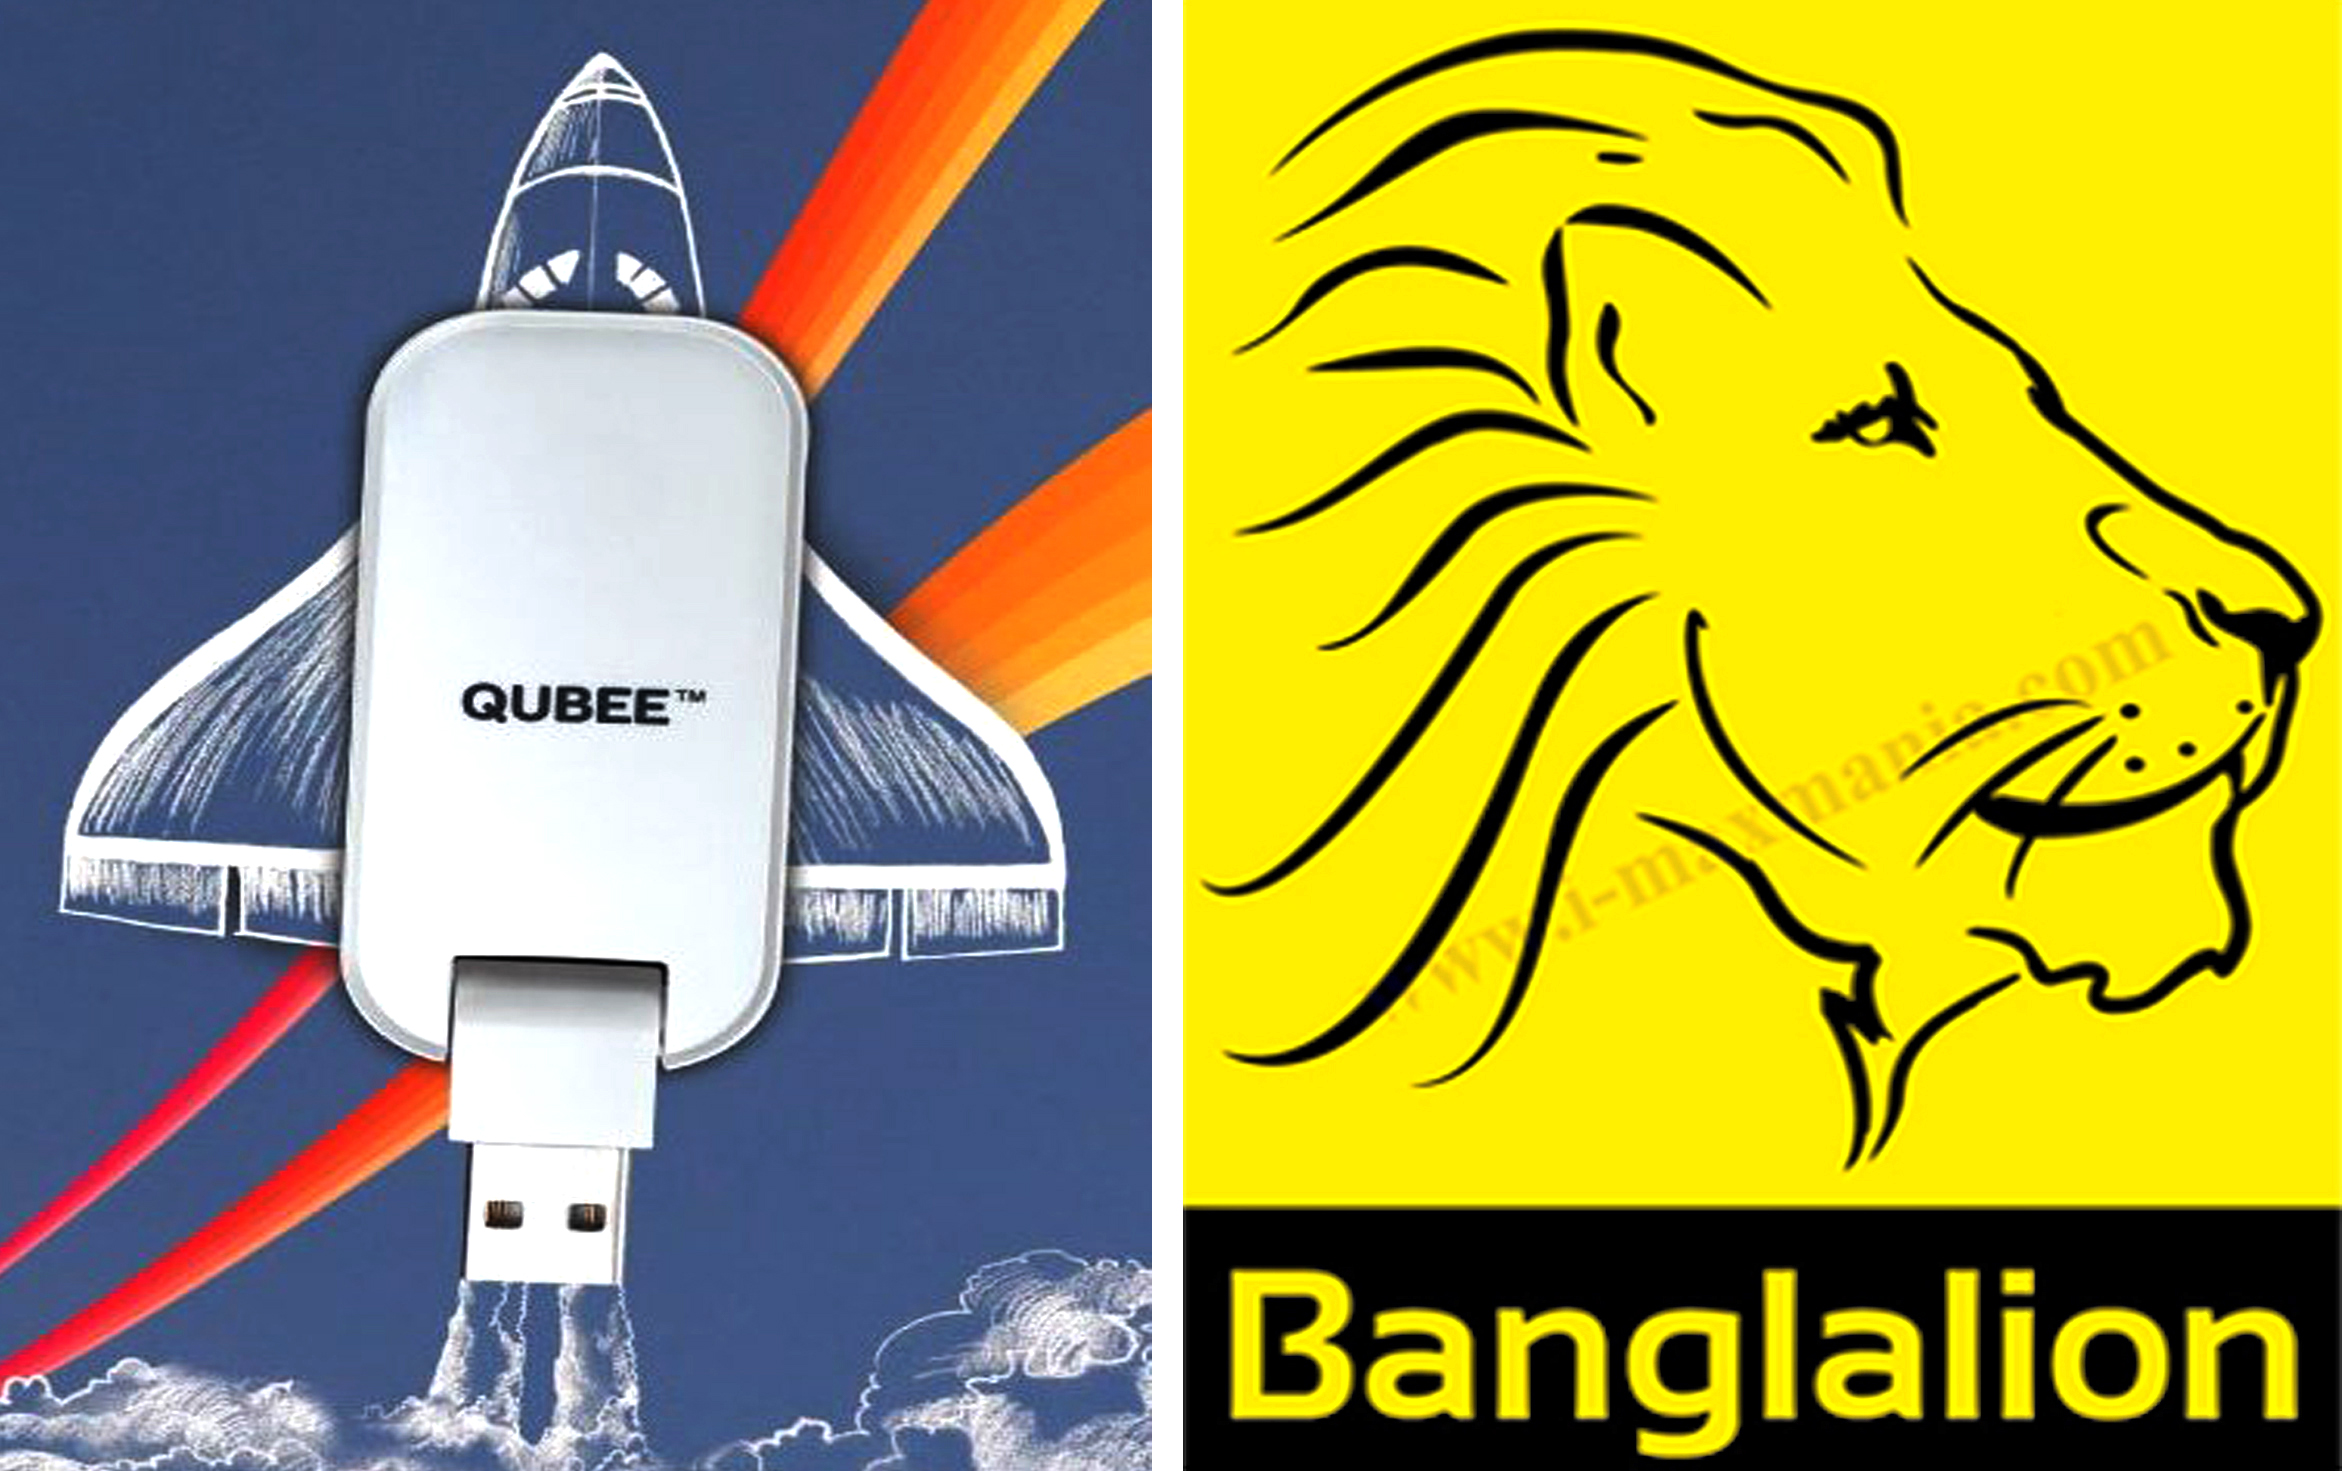 Qubee exchange with Banglalion large image 0